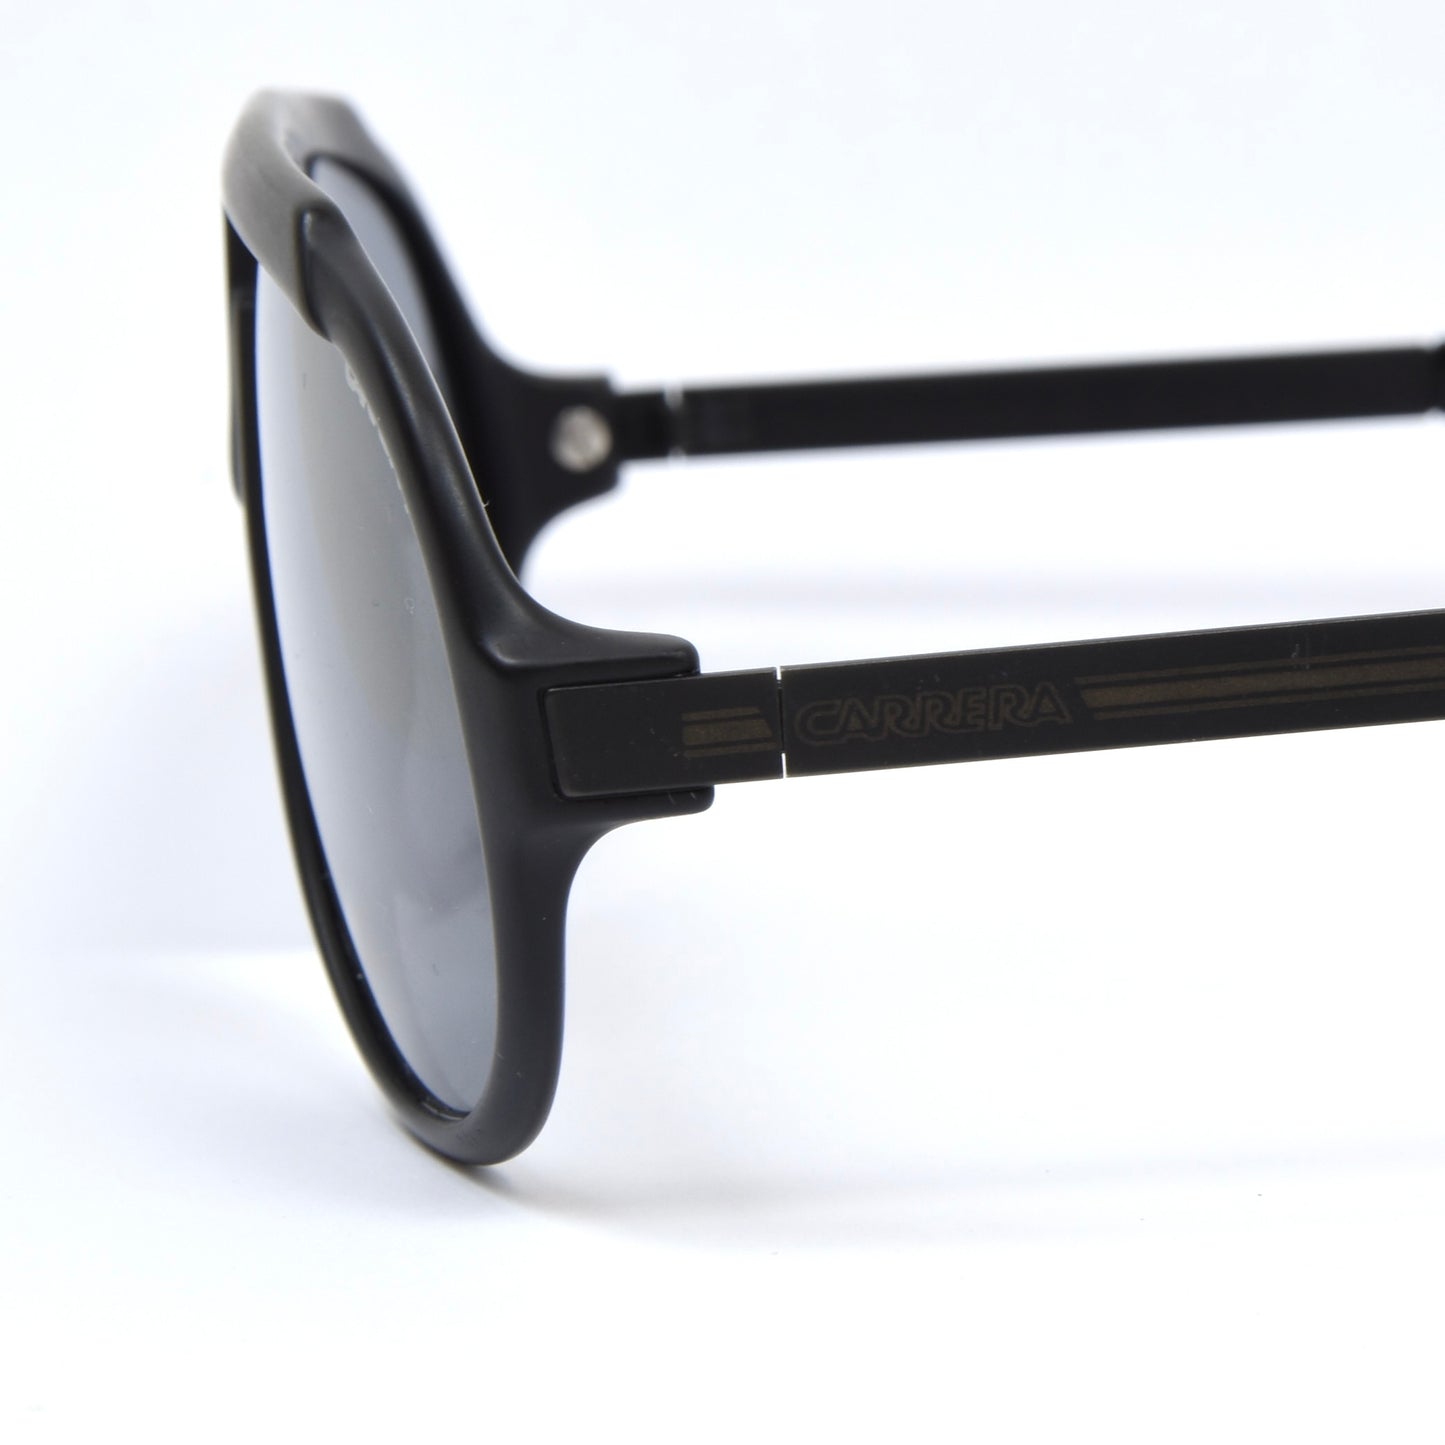 Carrera Mod. 5512 Miami Vice Sunglasses - Black